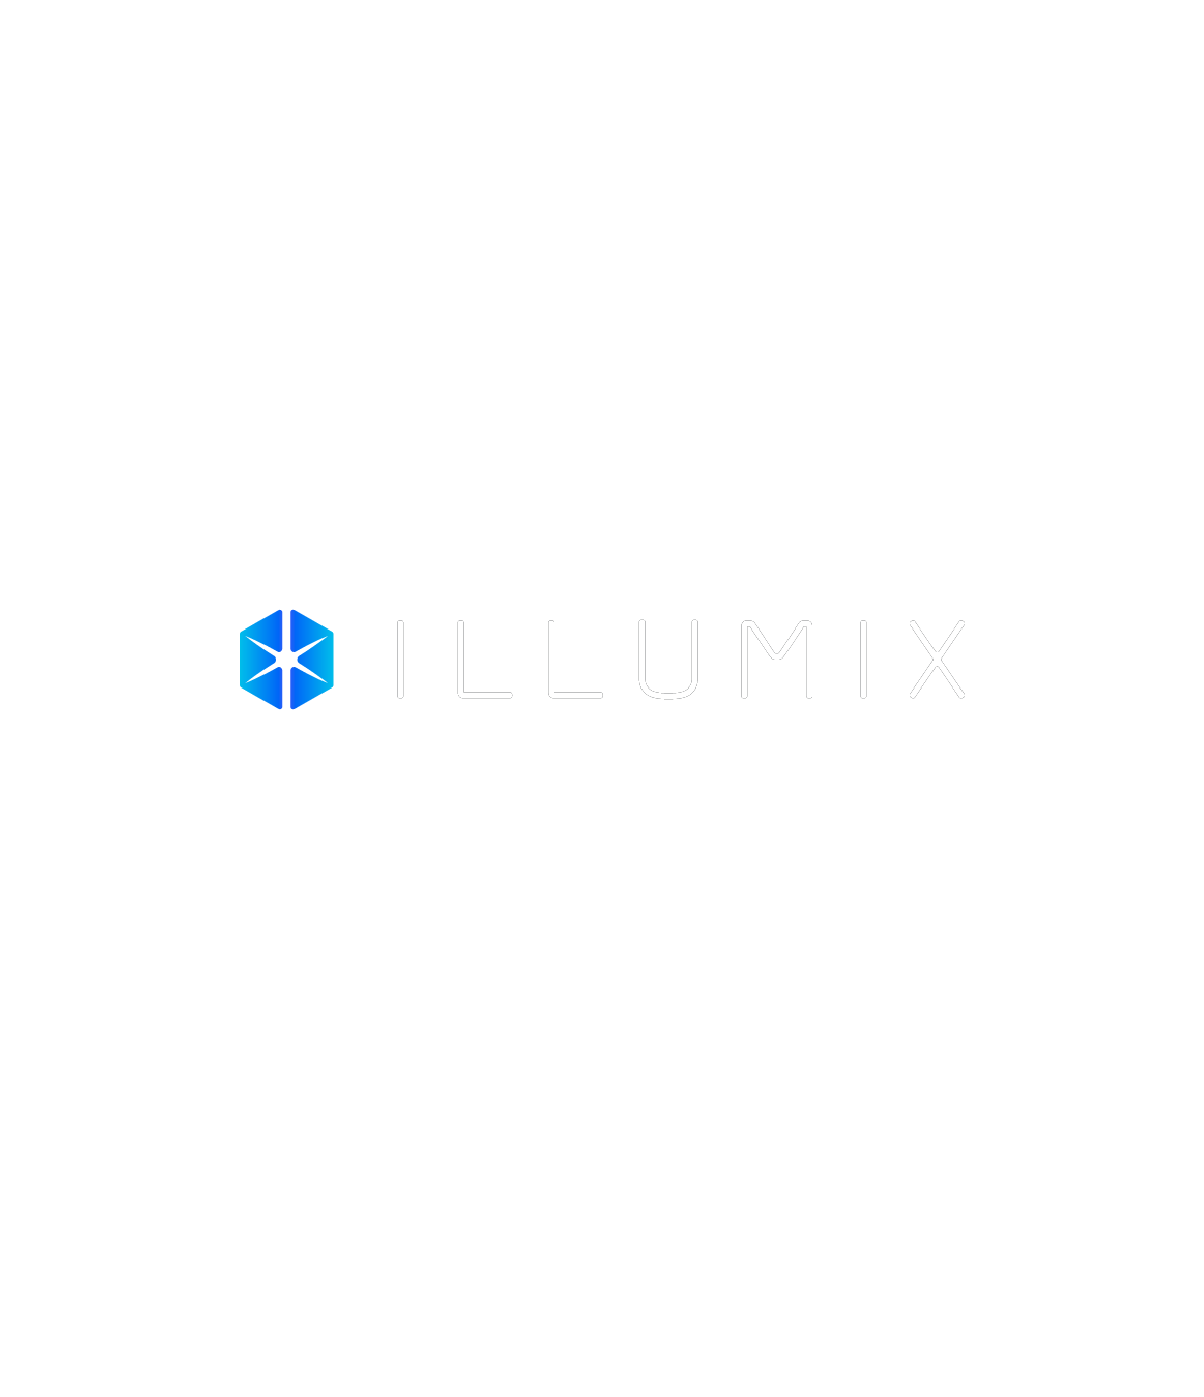 Illumix